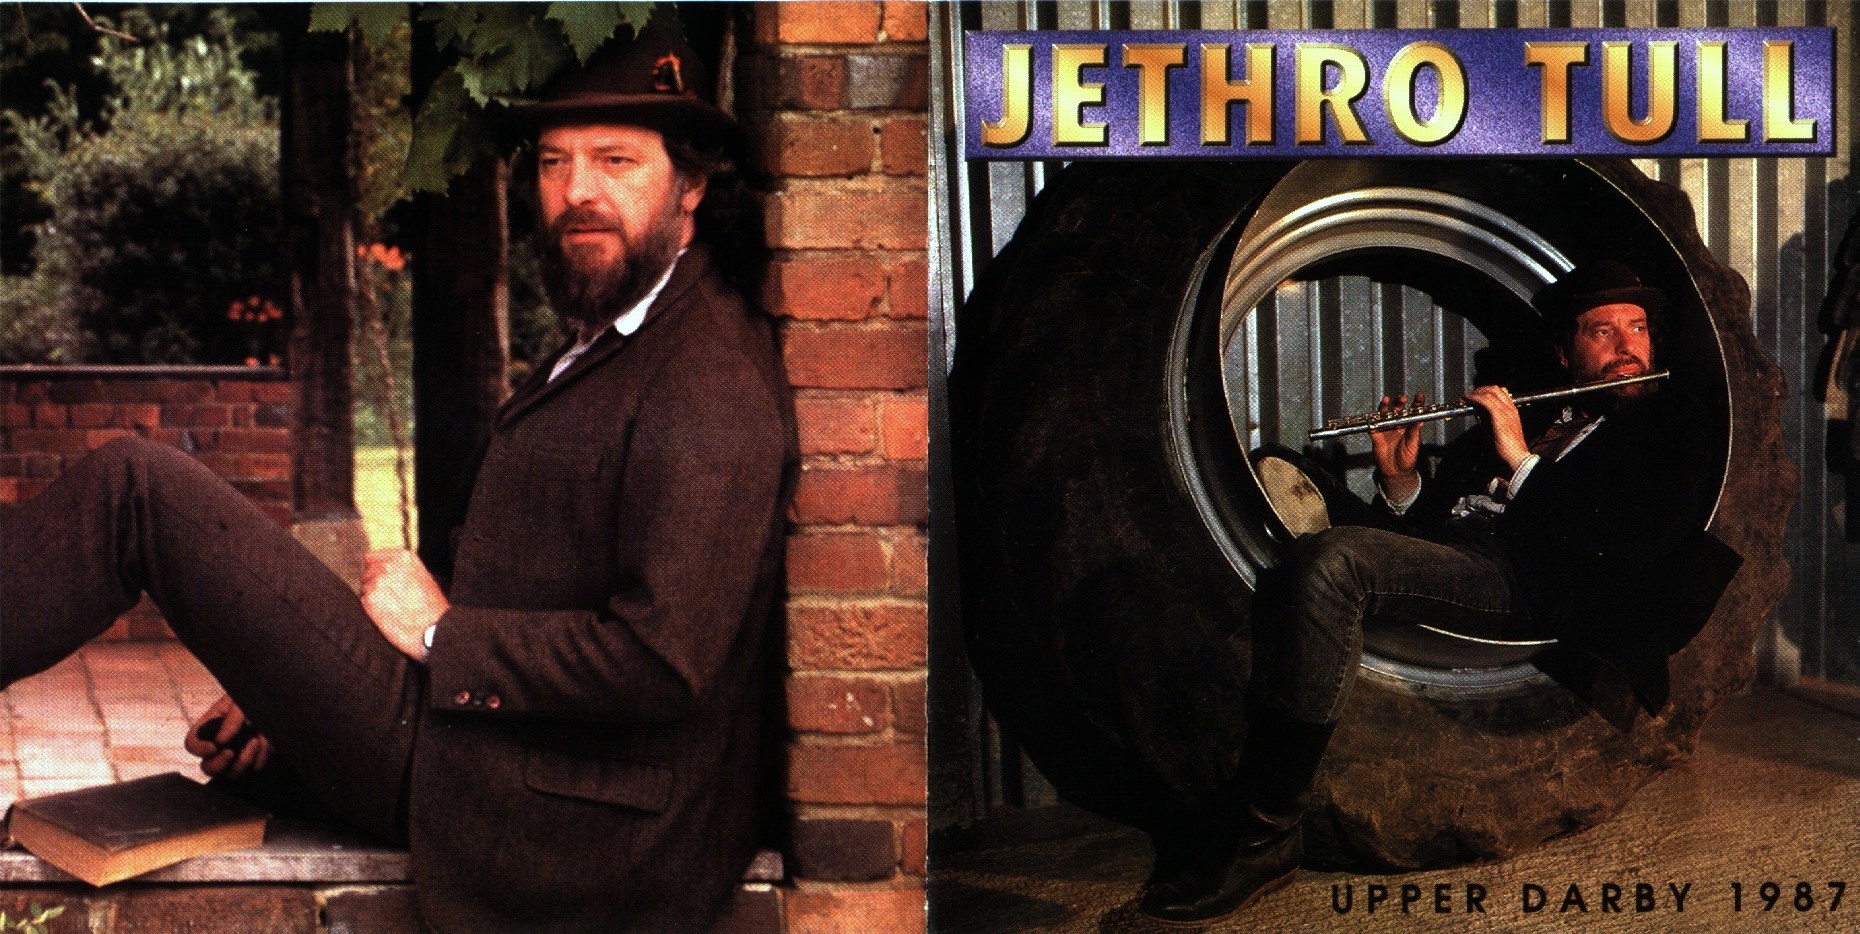 JethroTull1987-11-25TowerTheaterUpperDarbyPA (1).jpg